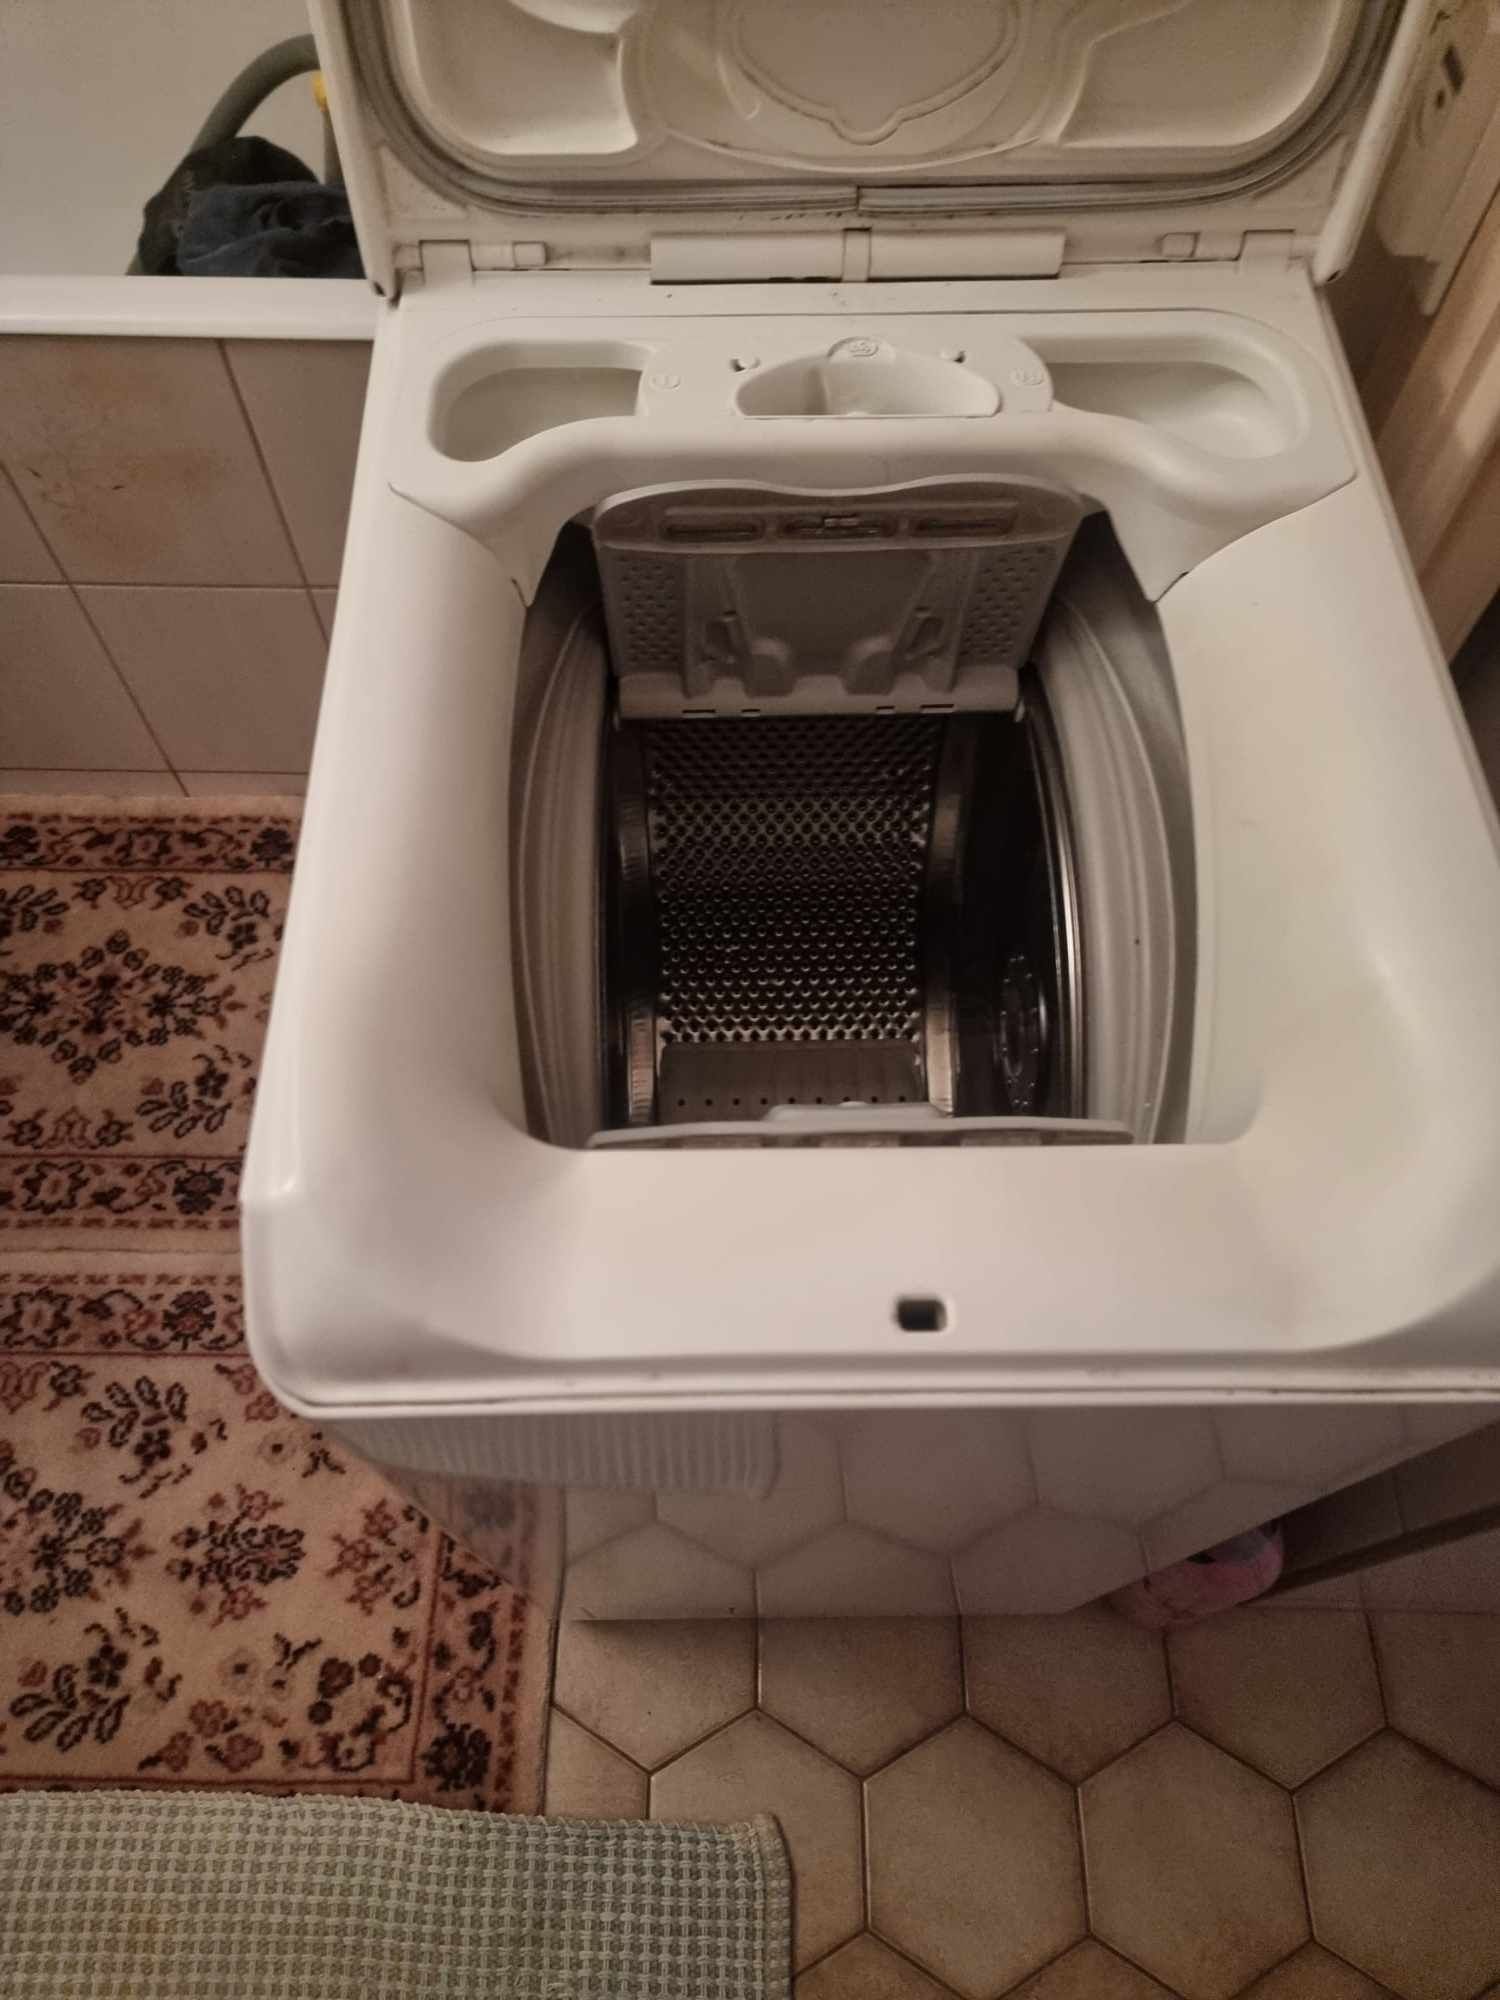 Arca congeladora   e maquina de lavar roupa 5kg